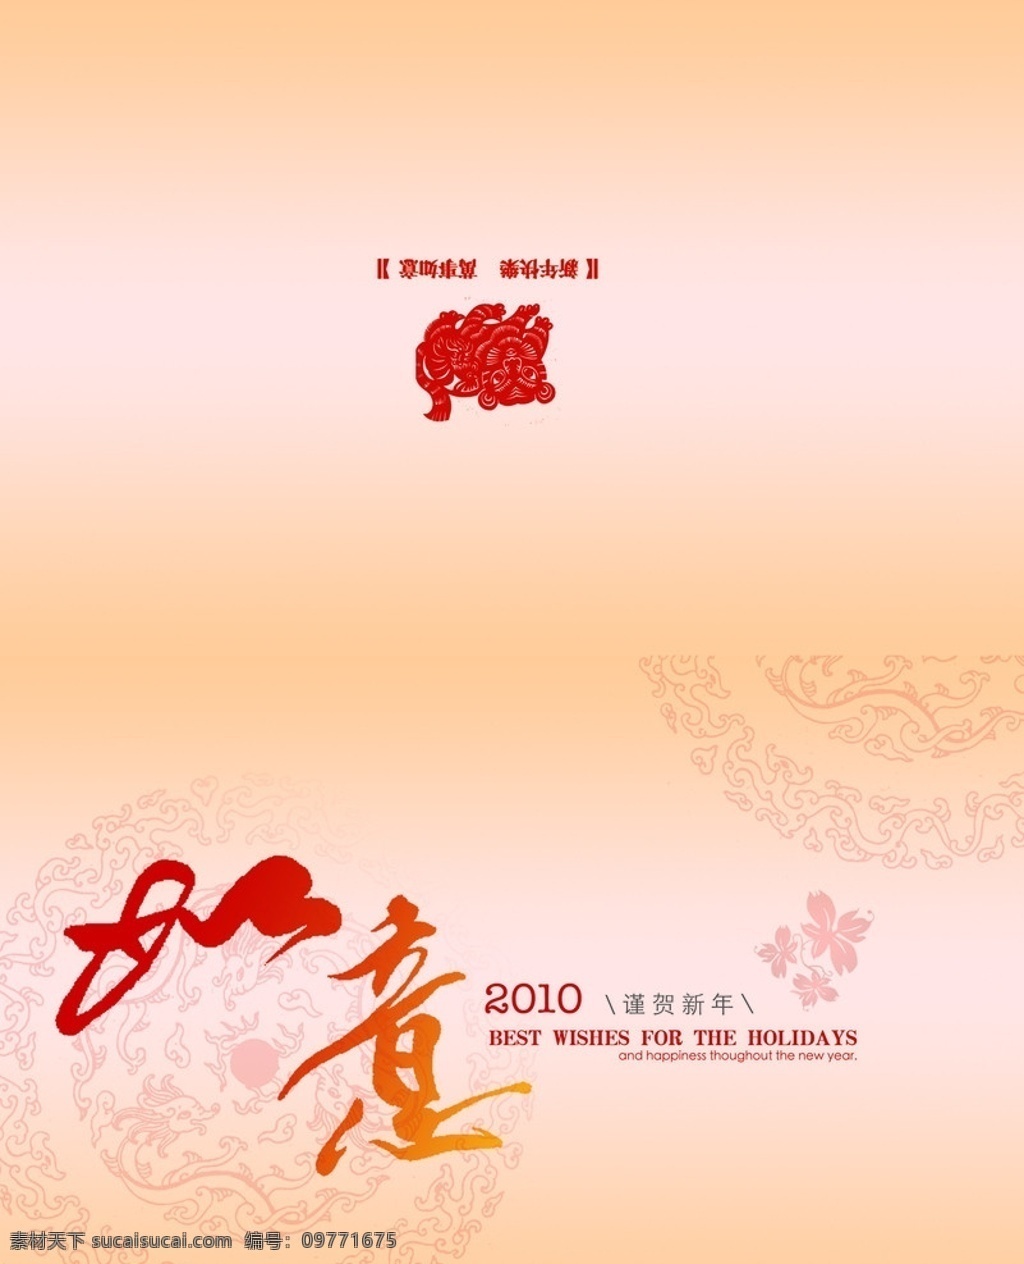 贺年 贺卡 源文件 红 中国红 如意 福 虎 2010 金色 圆 龙纹 其他模版 广告设计模板